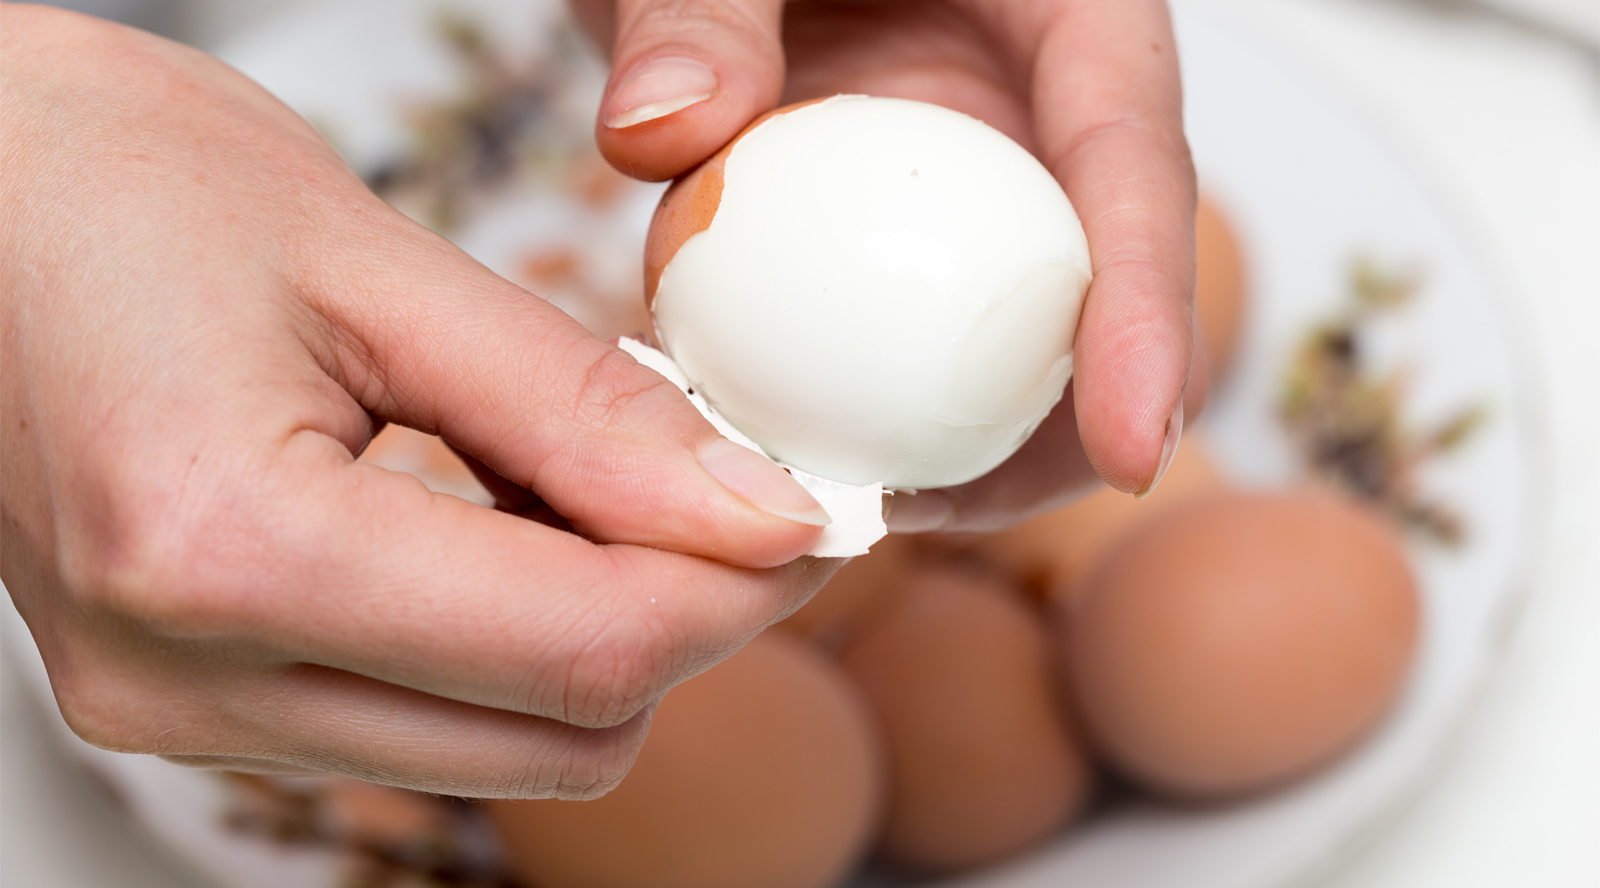 Hogy pontosan mennyi tojás jó enni hetente? A szakértők nyíltan fogalmaznak  - kiskegyed.hu